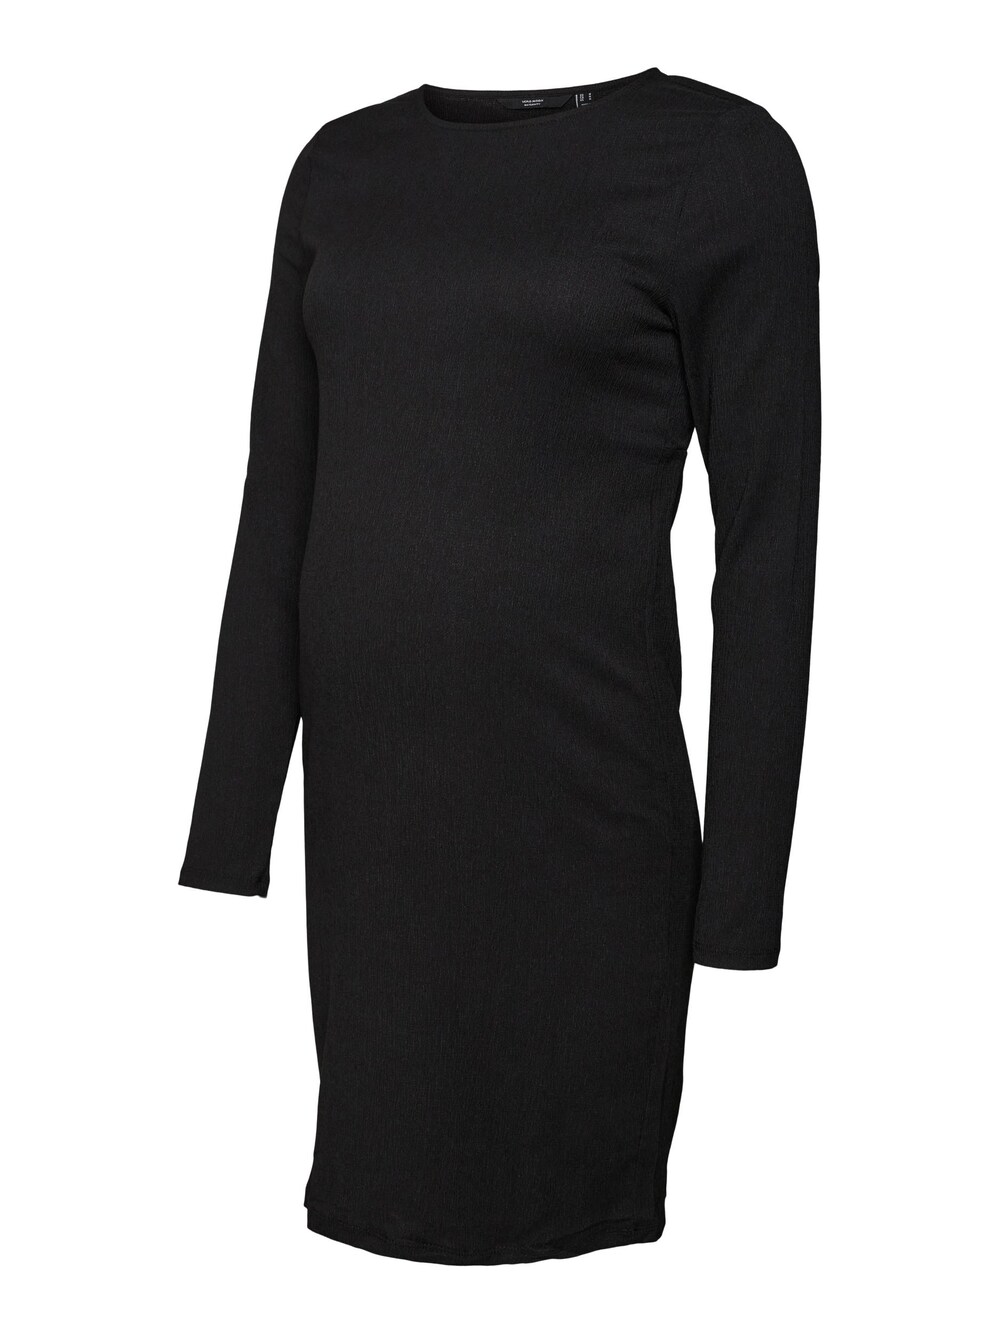 vero moda джемпер толстовка женский цвет черный размер xs Платье Vero Moda ELIOHAYA, черный